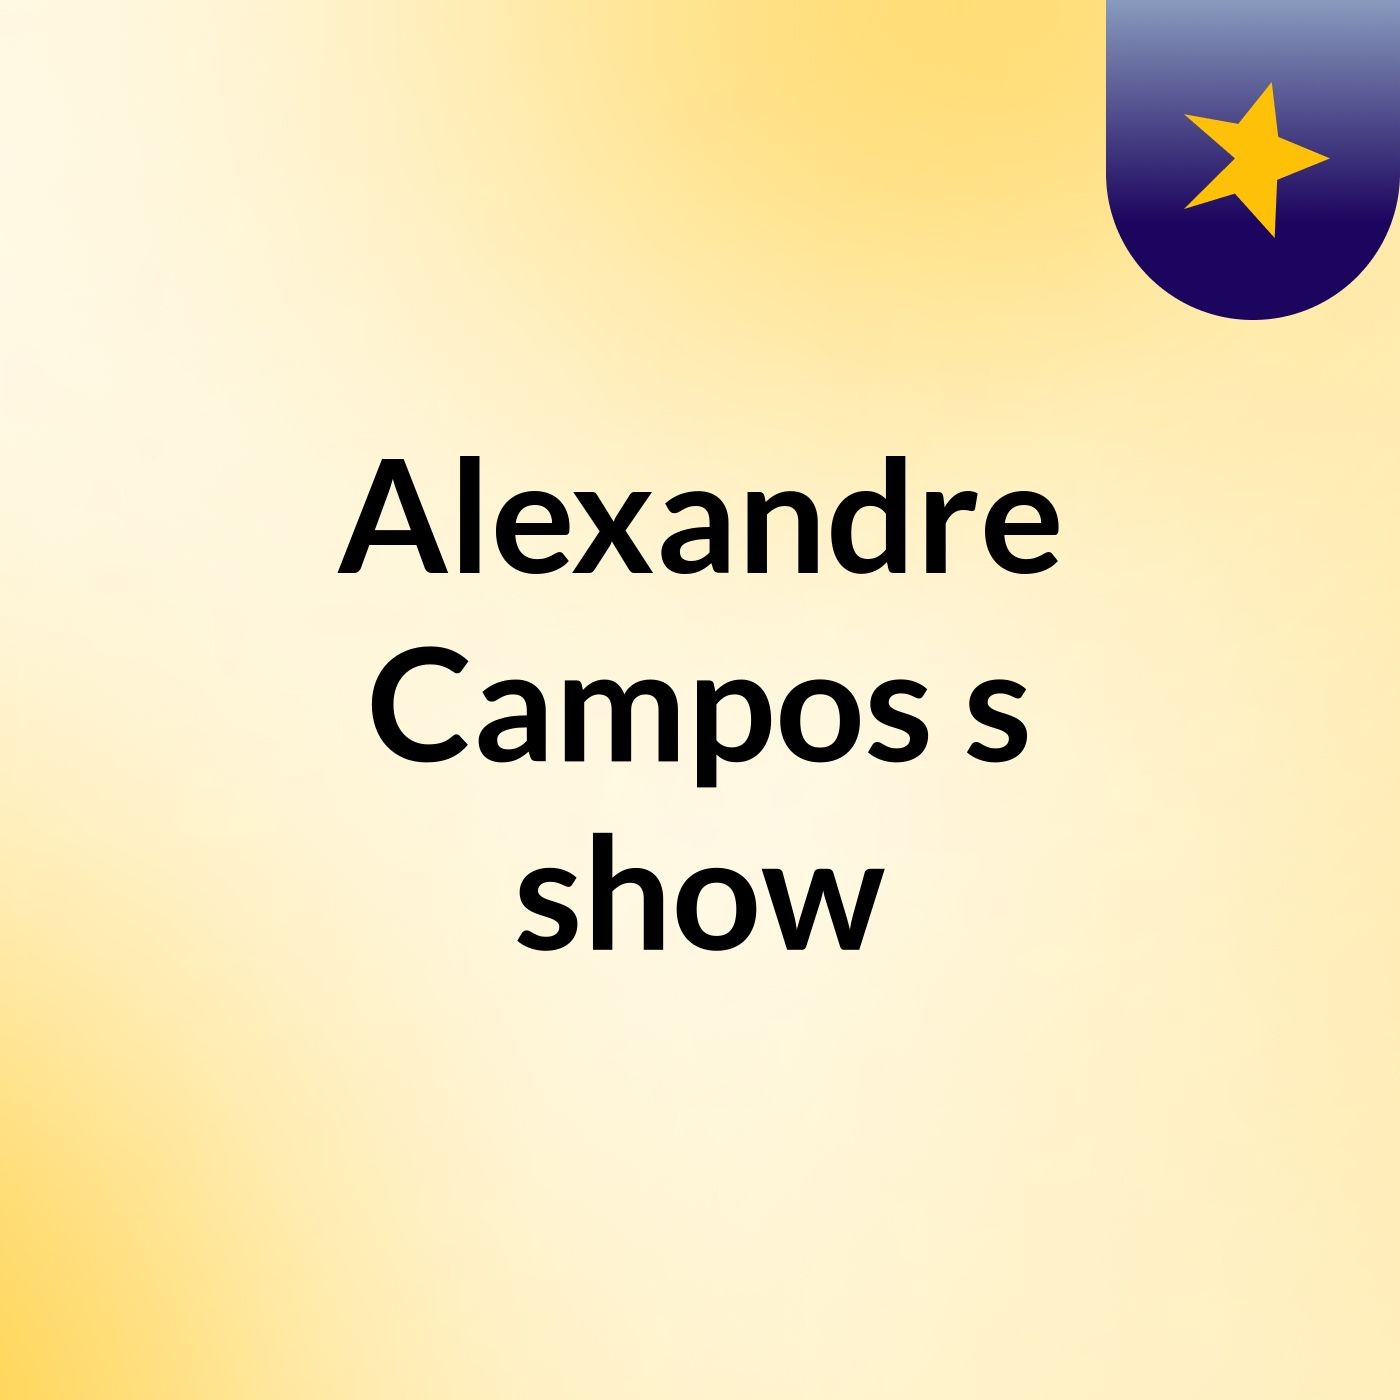 Alexandre Campos's show